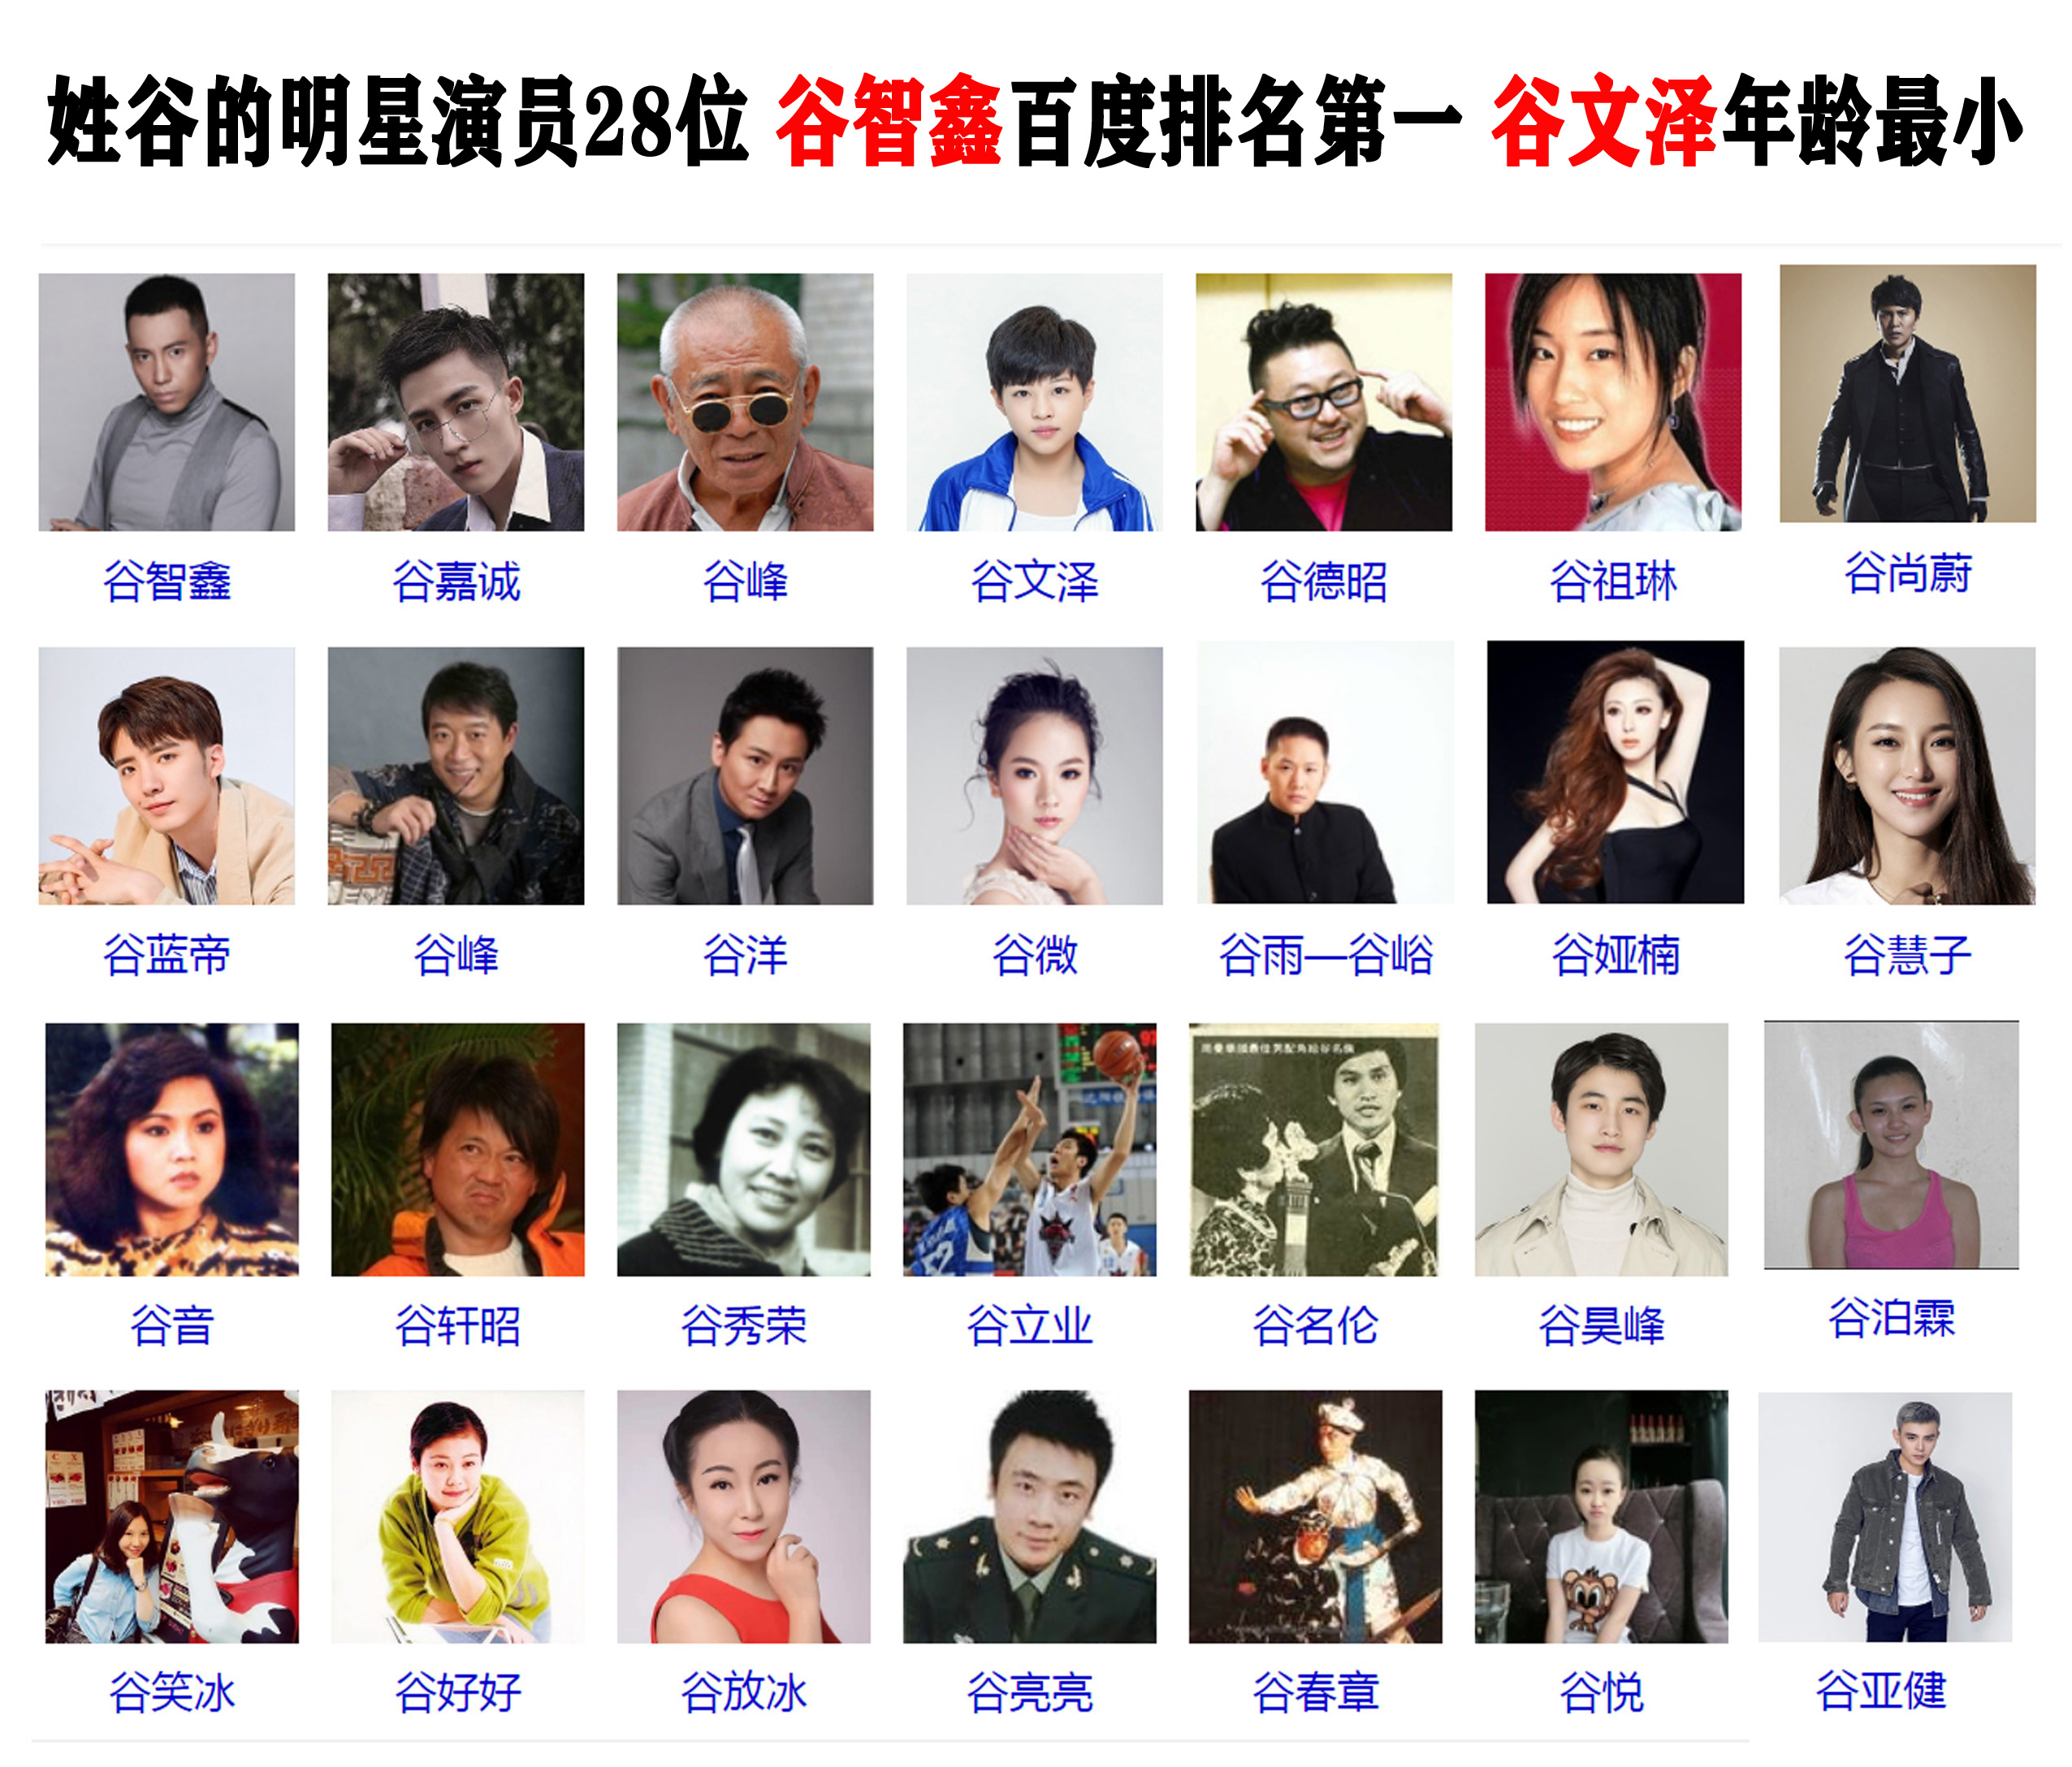 姓谷的明星演员28位 谷智鑫百度排名第一 谷文泽年龄最小